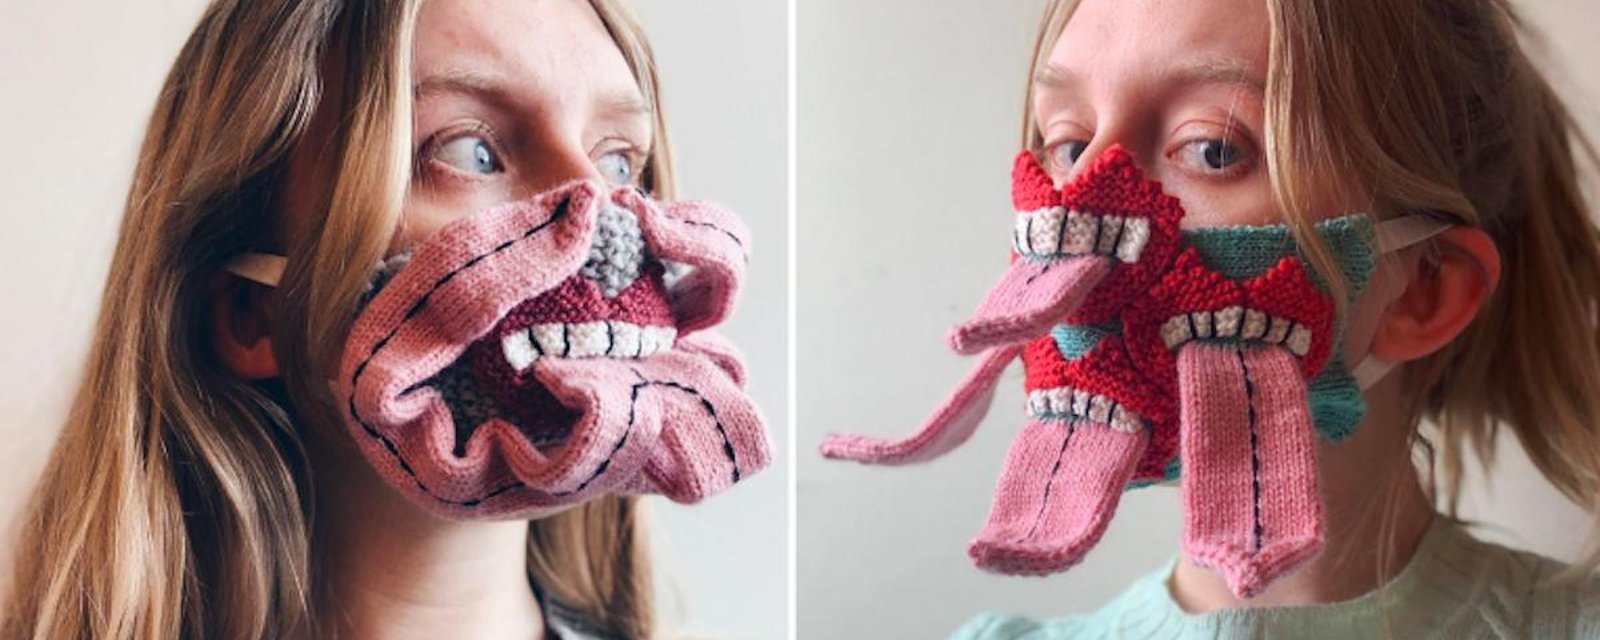 Pandémie de COVID-19: pour encourager la distanciation sociale, elle tricote  des masques repoussants!